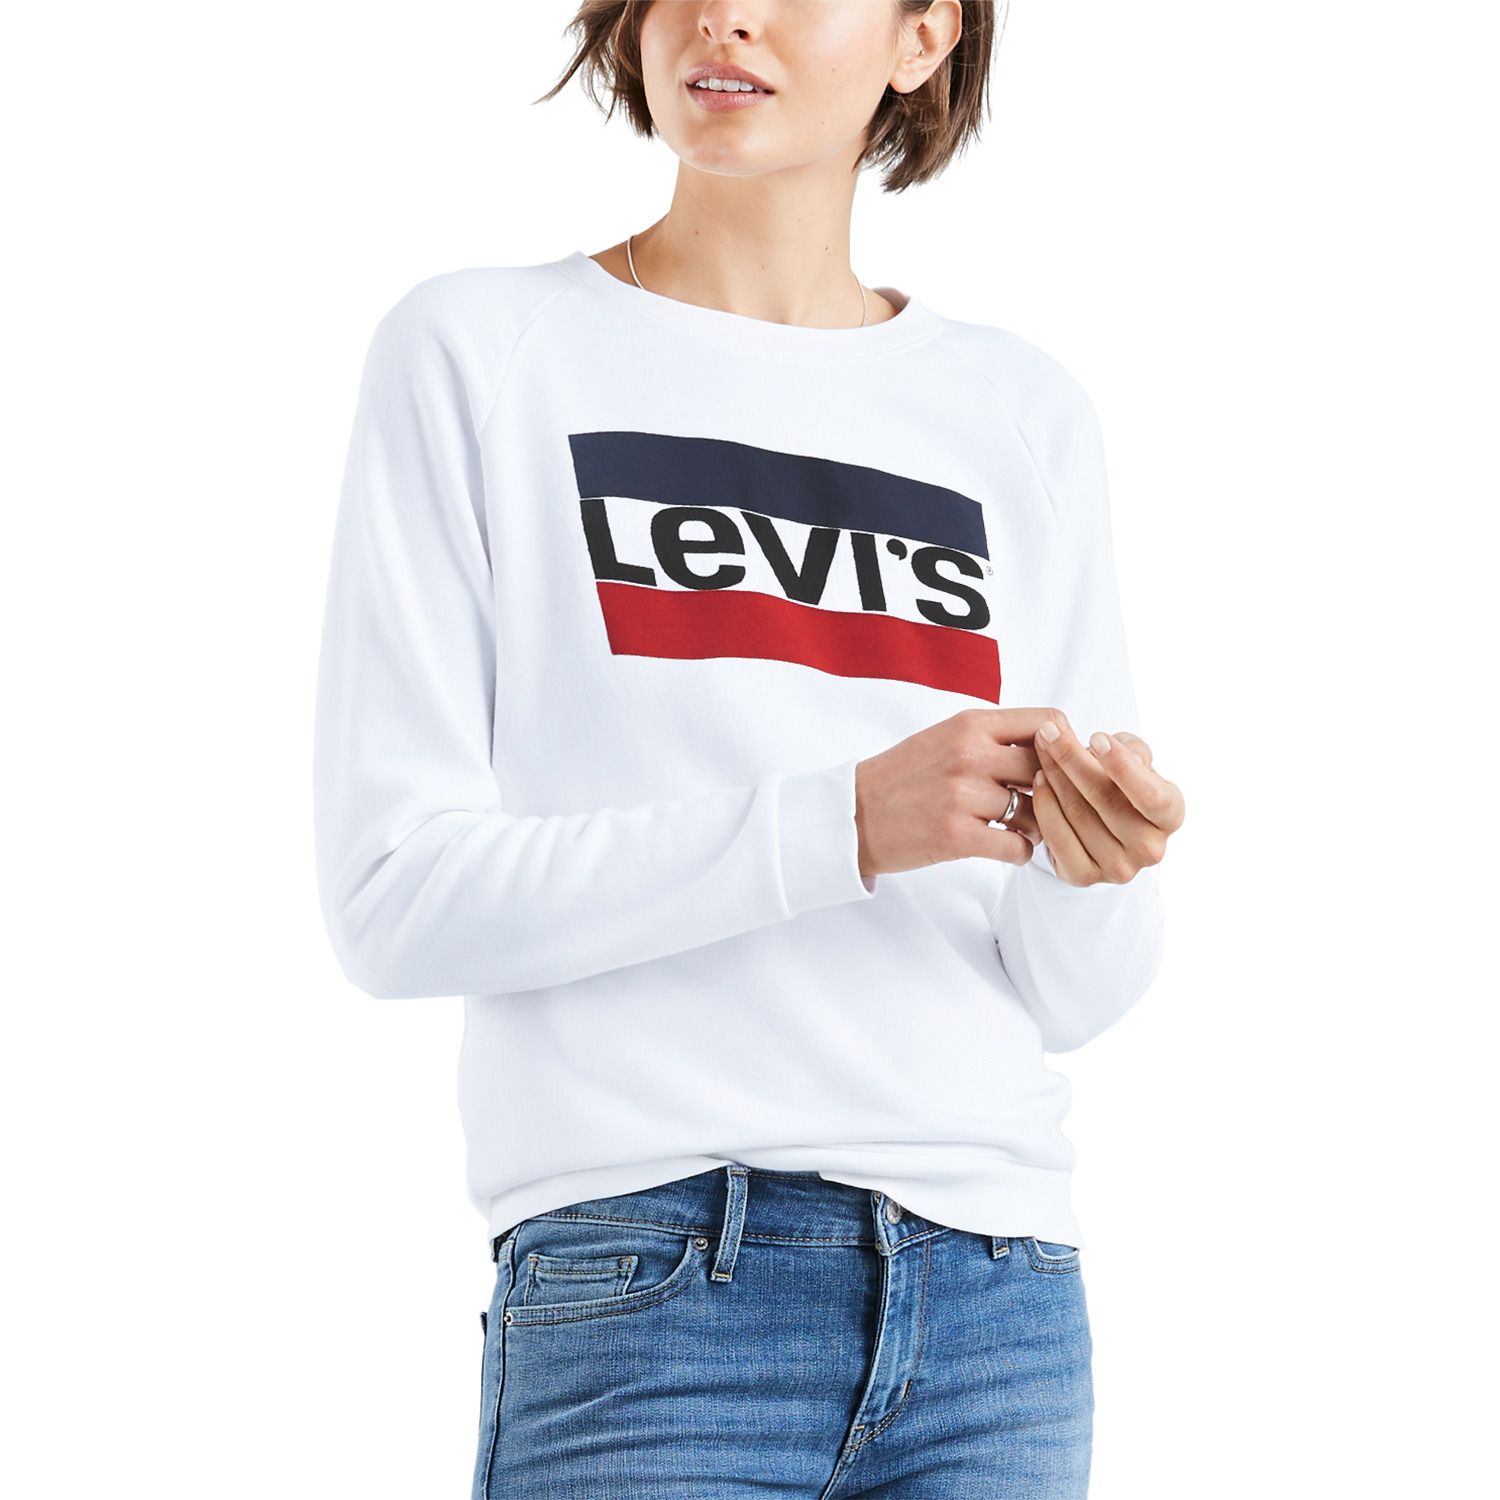 levi's sweatshirts for ladies